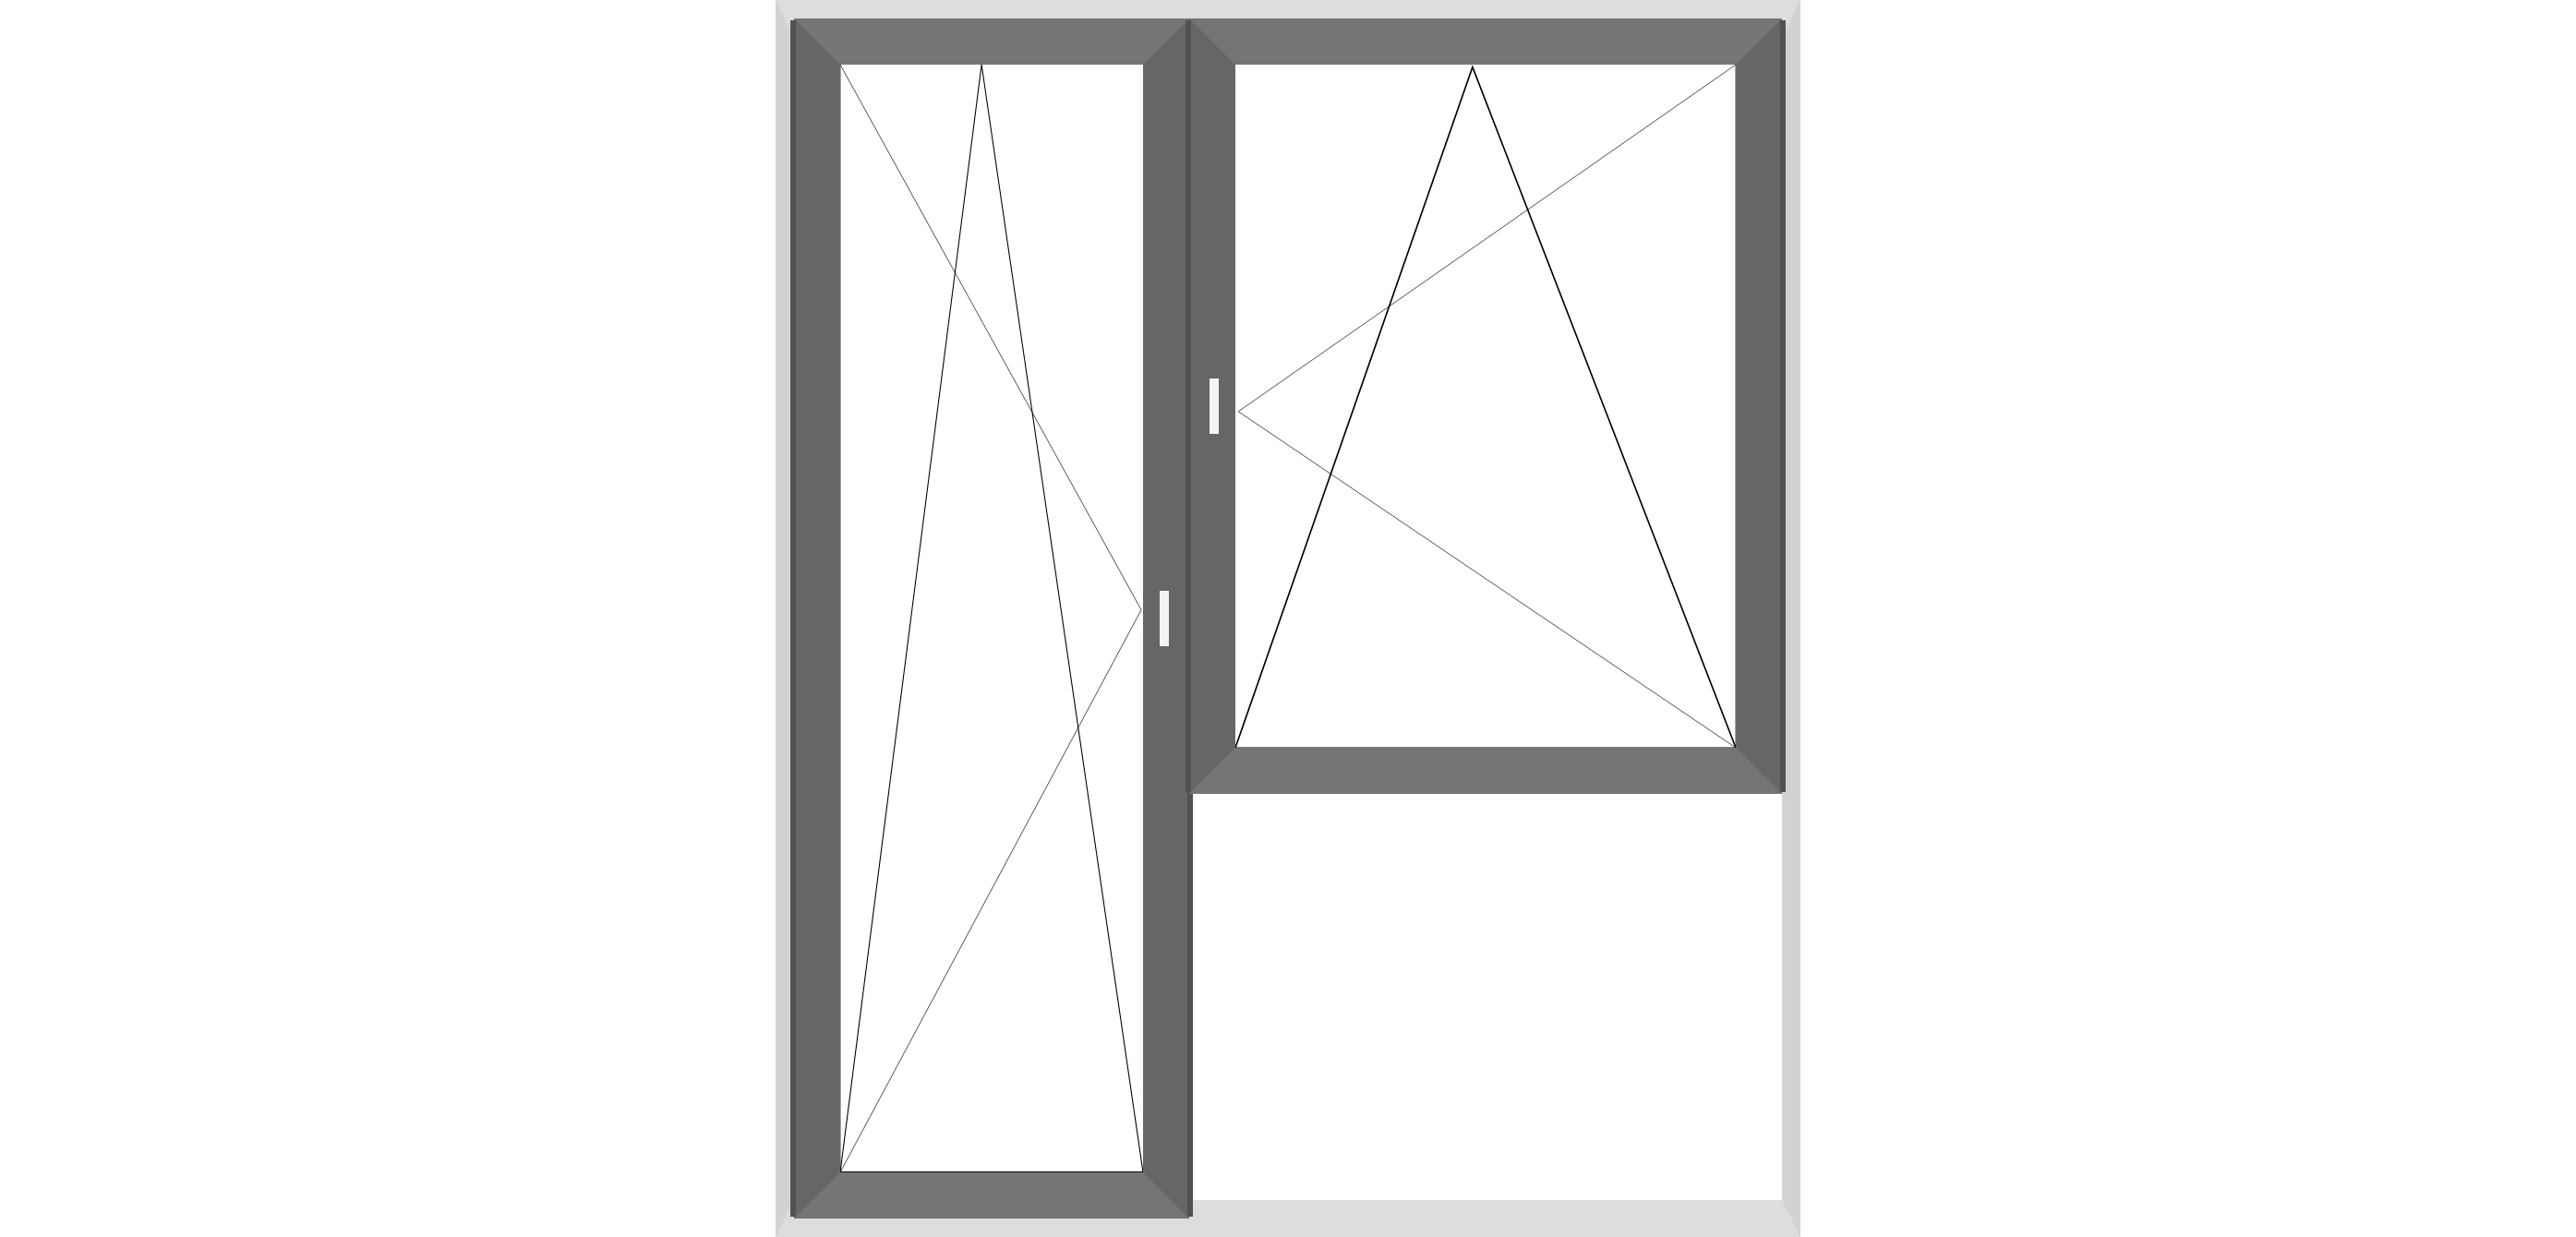 Двуосово отваряеми врата и прозорец (пистолет)